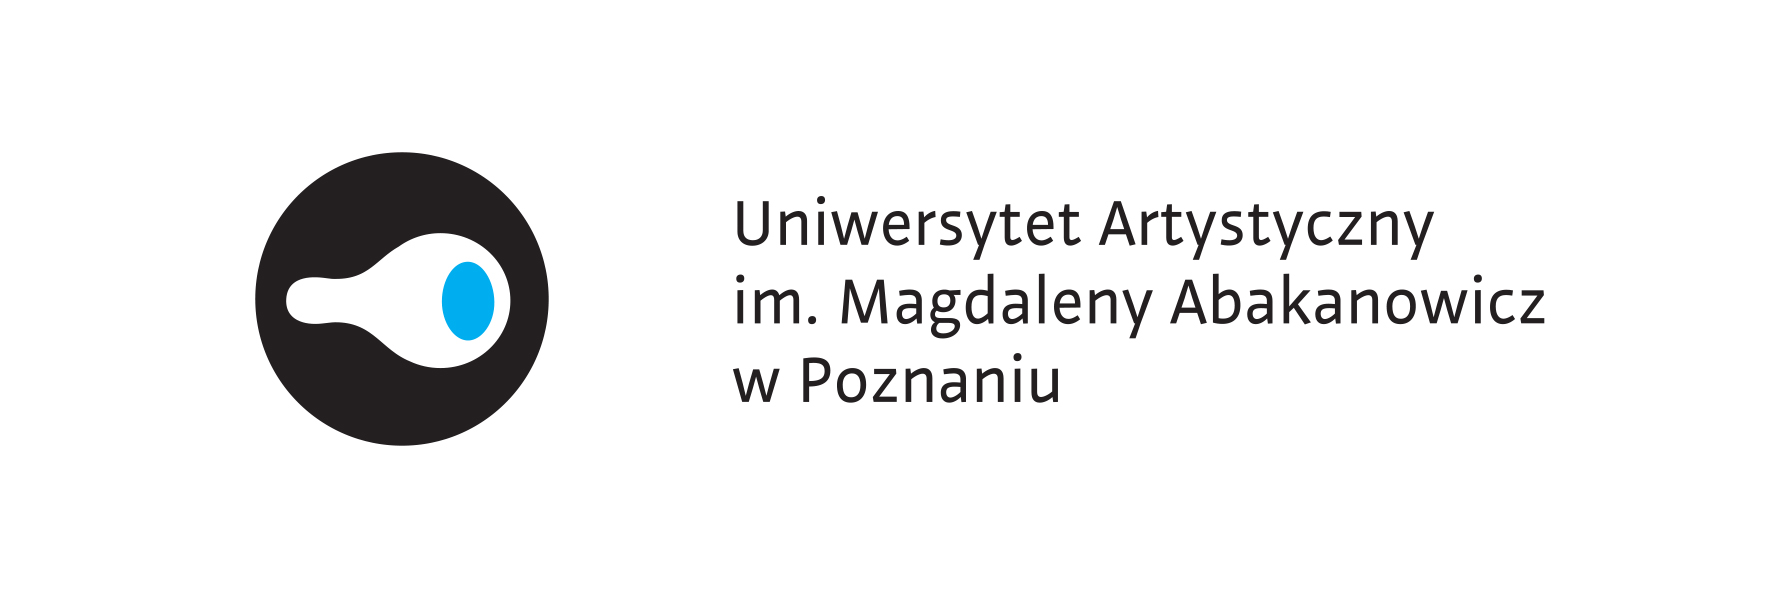 Logo_Uniwersytet Artystyczny im. Magdaleny Abakanowicz w Poznaniu